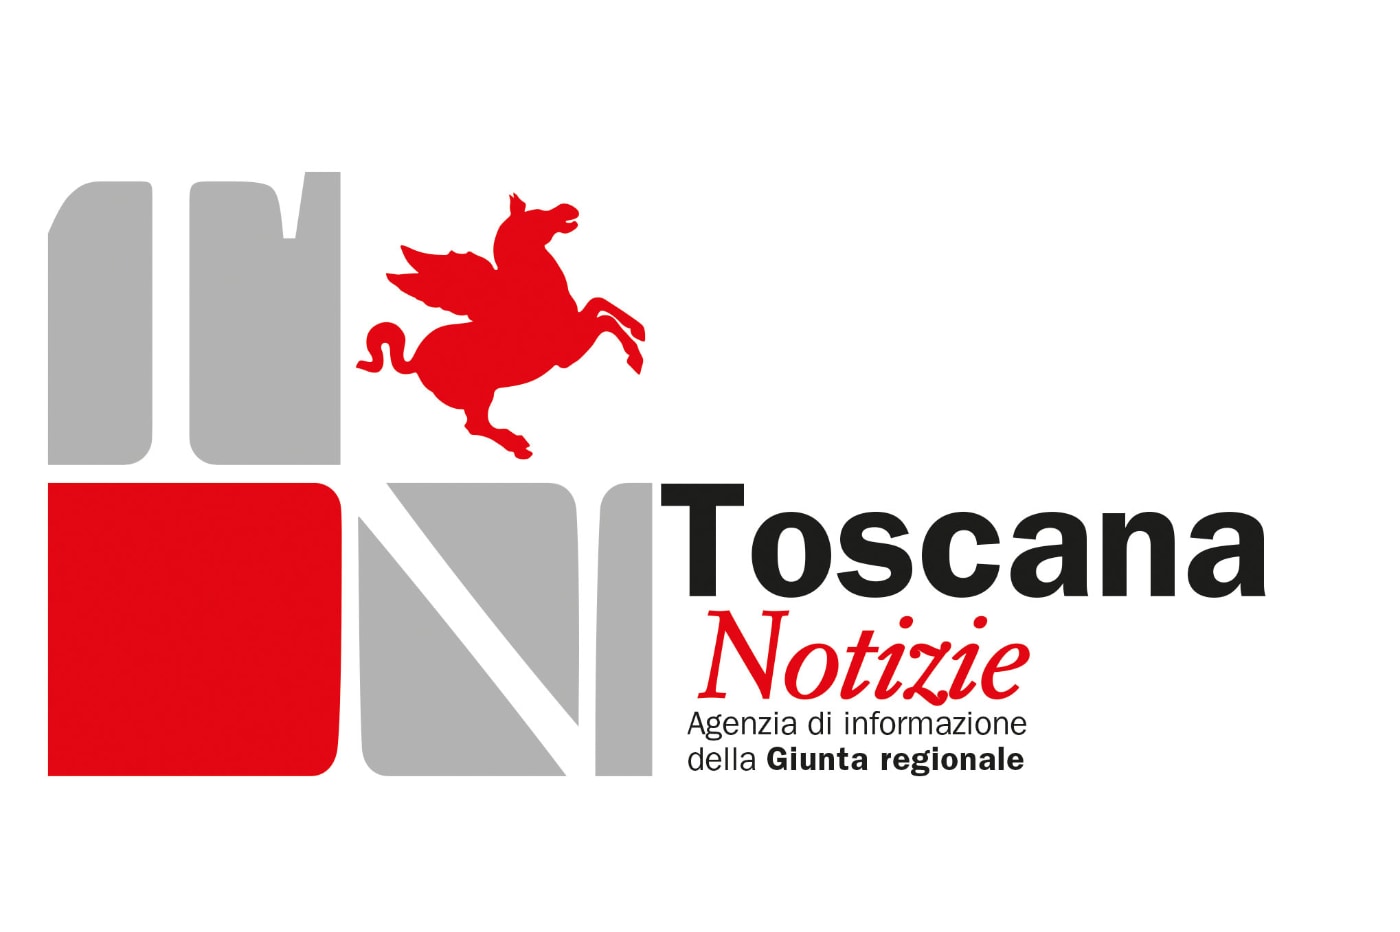 Regione Toscana - Progettazione del logo e dell'immagine coordinata per Ufficio Stampa Toscana Notizie